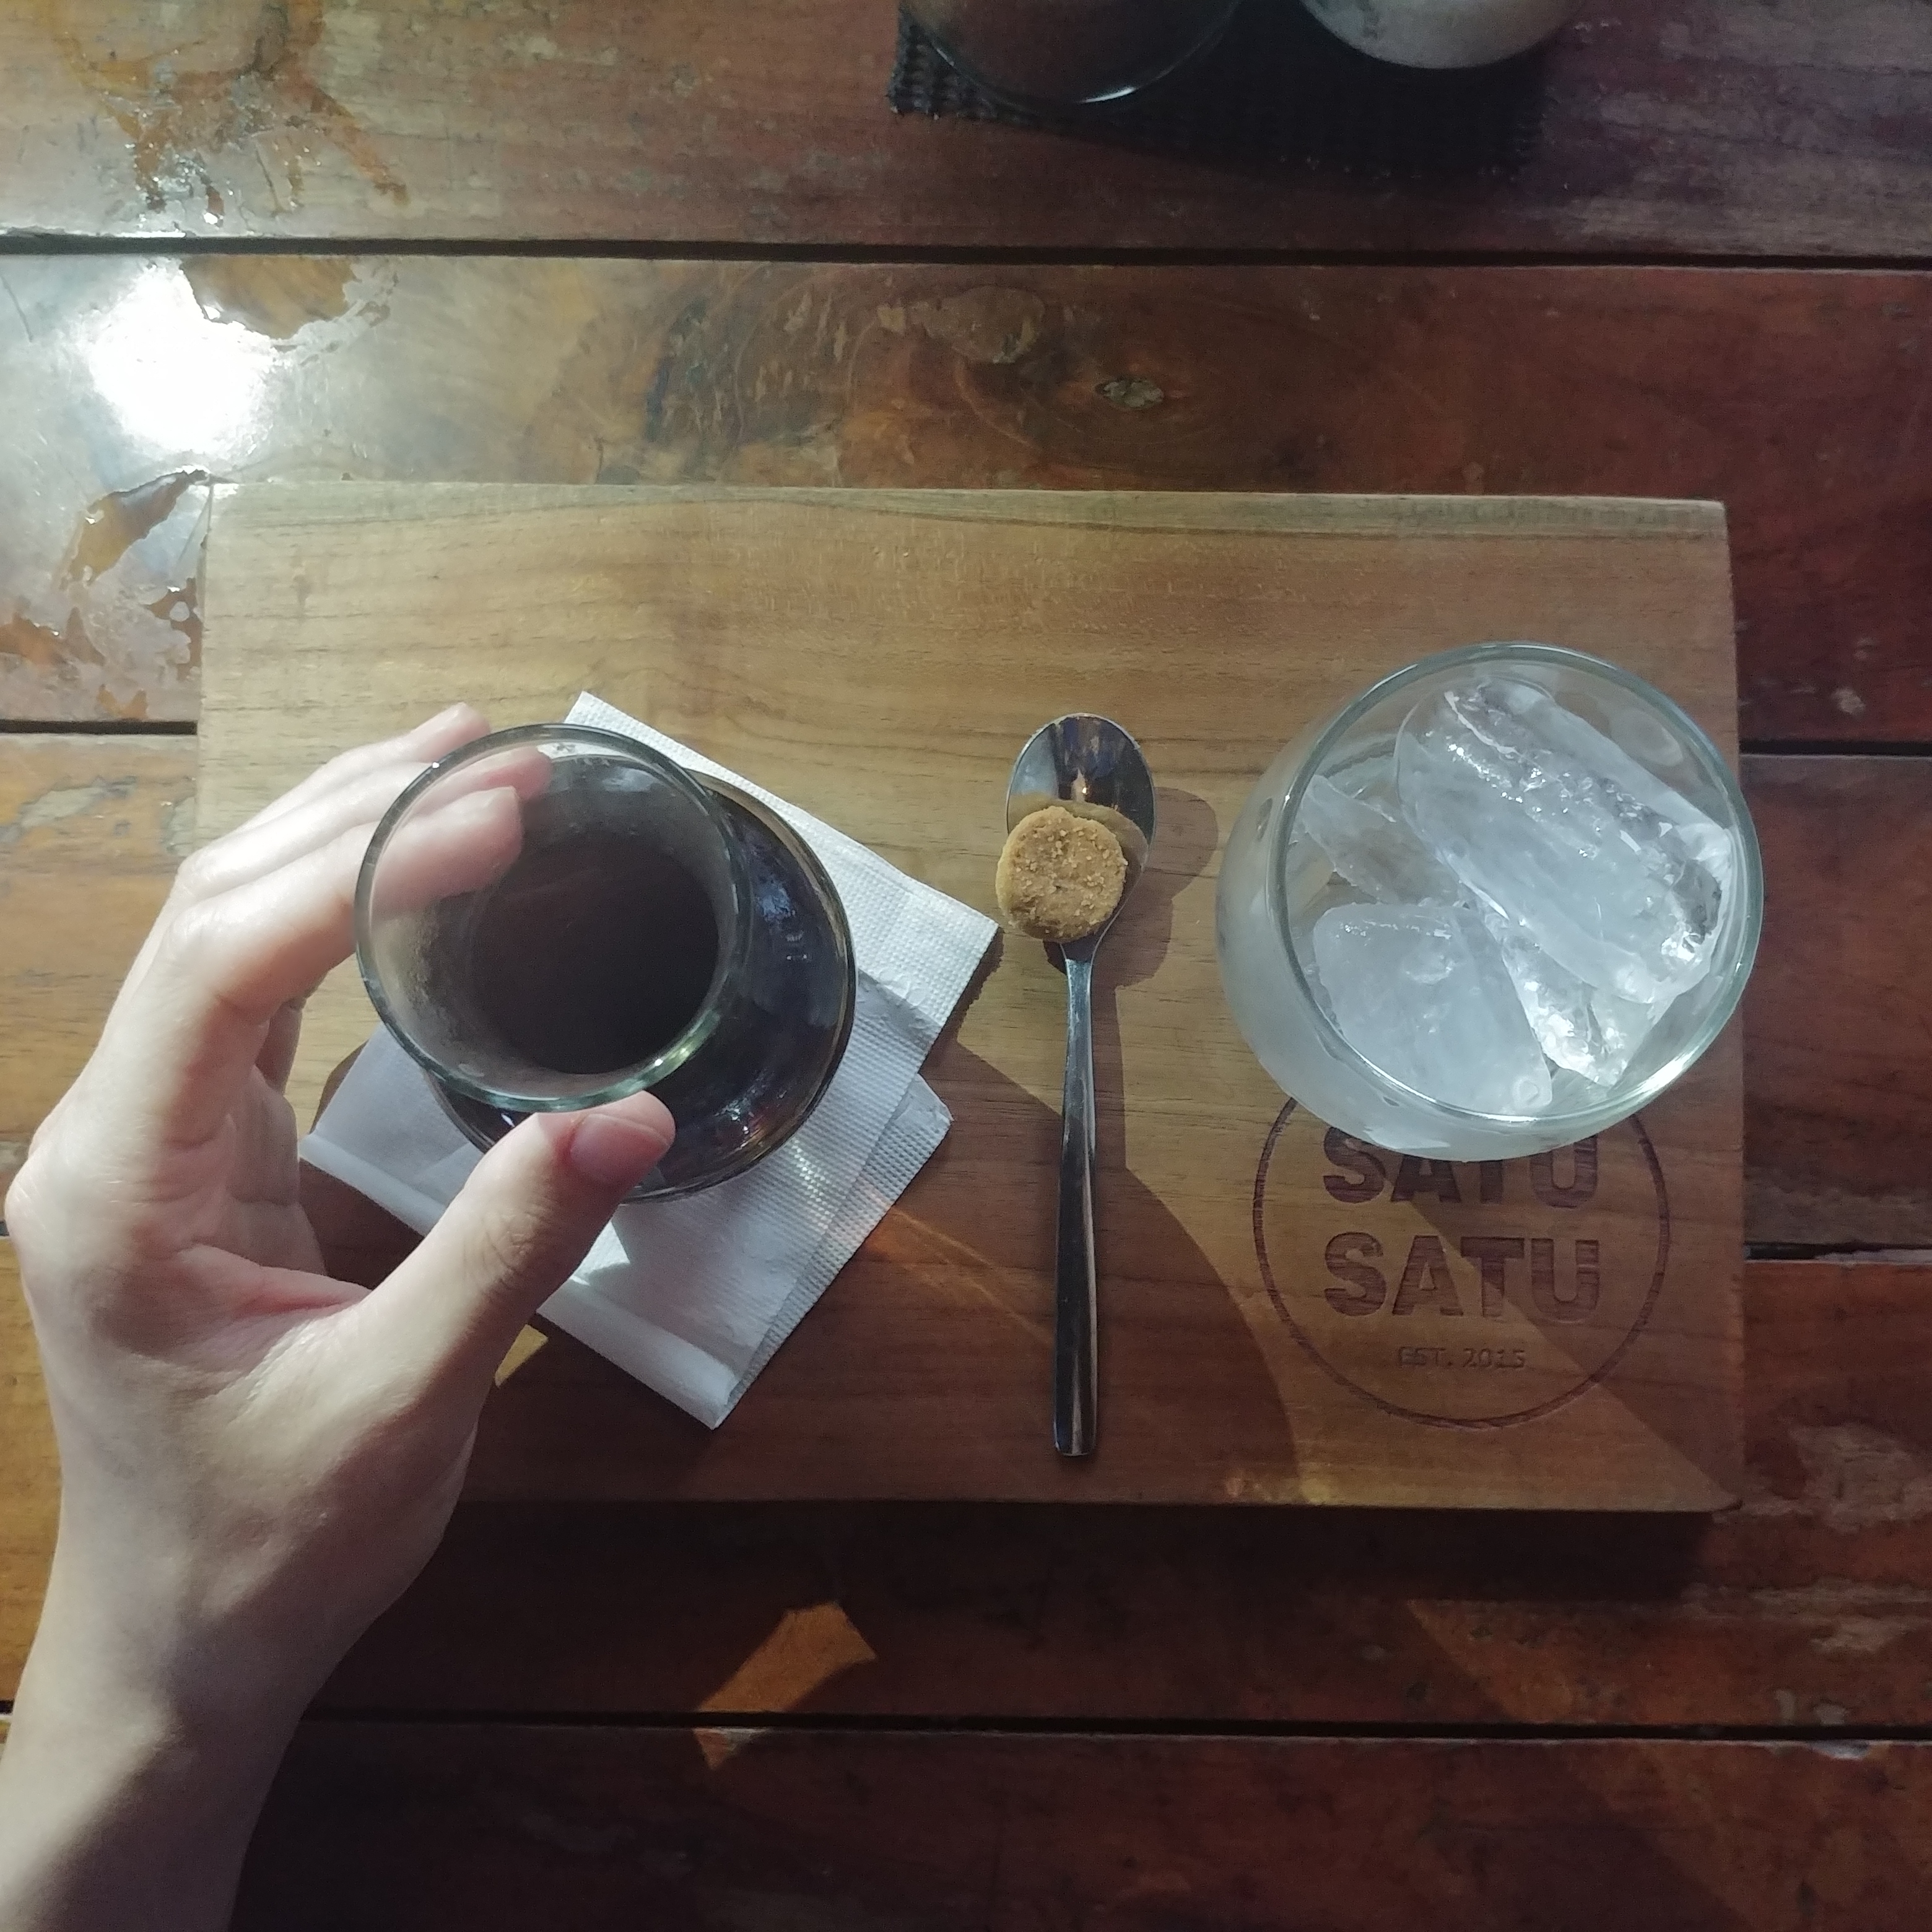 인도네시아 발리 여행 스미냑 카페 추천 Satusatucoffee